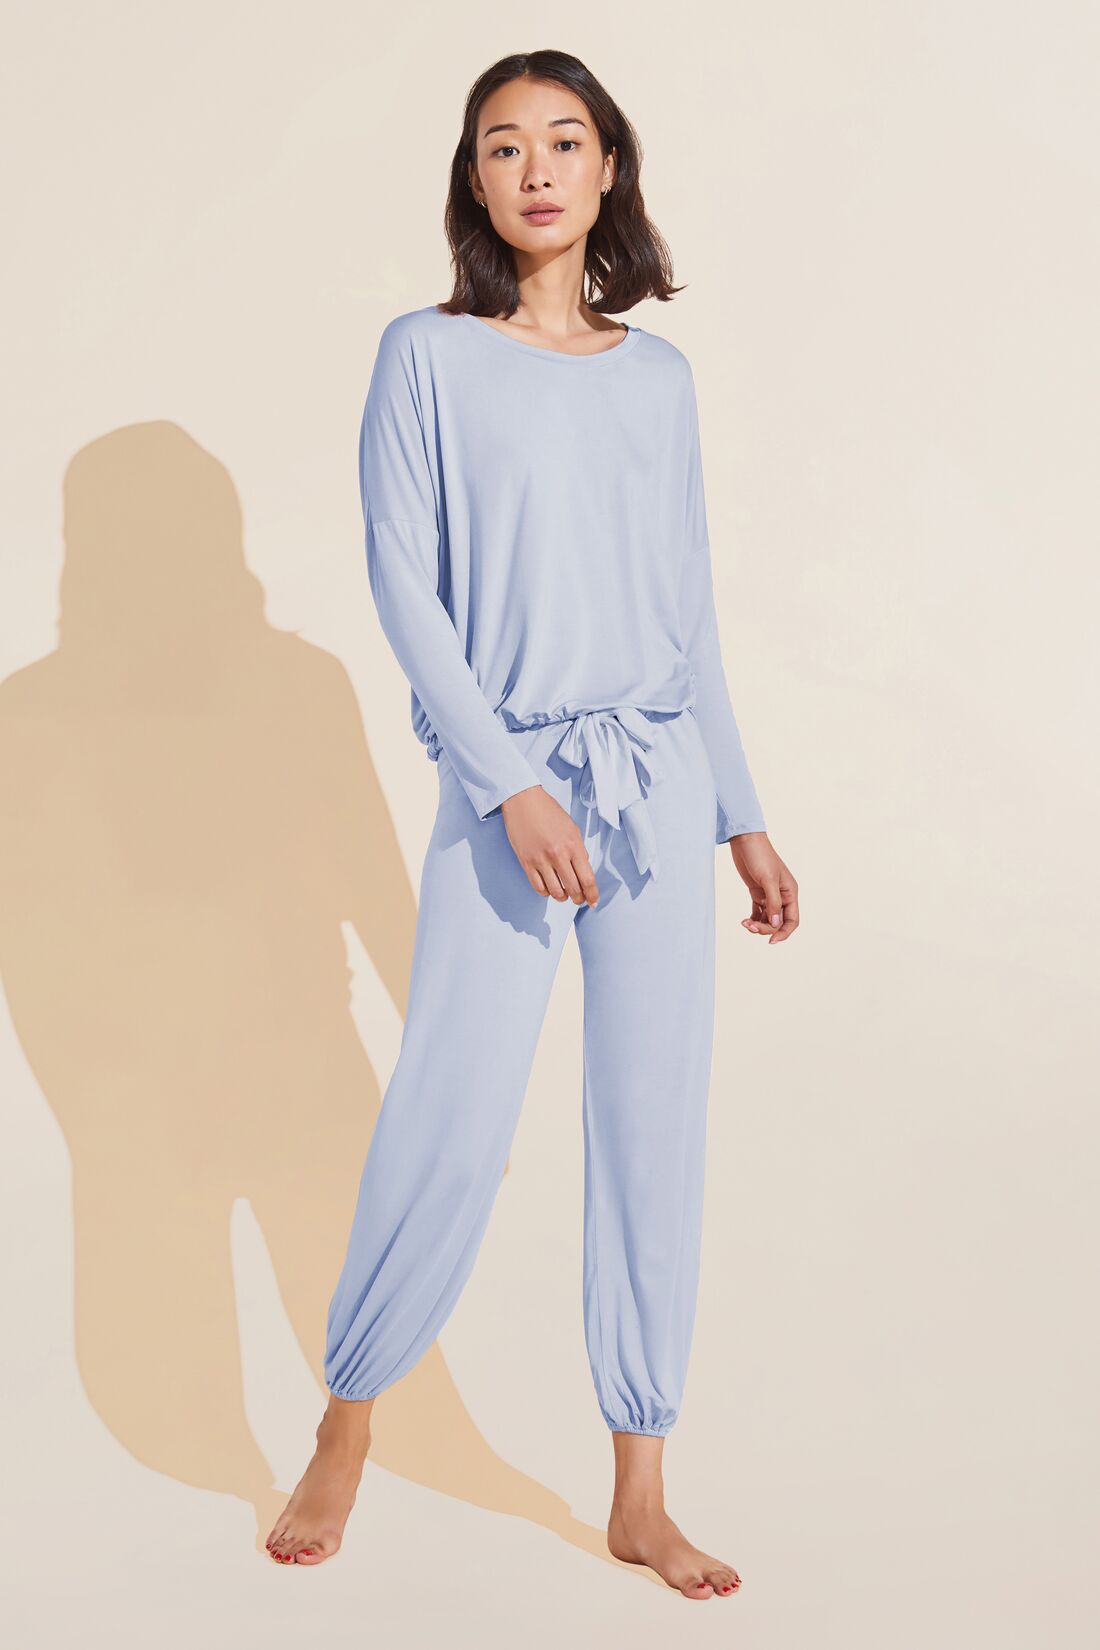 order store‎ NWT Soma COOL NIGHTS Long Sleeve Pajama Set